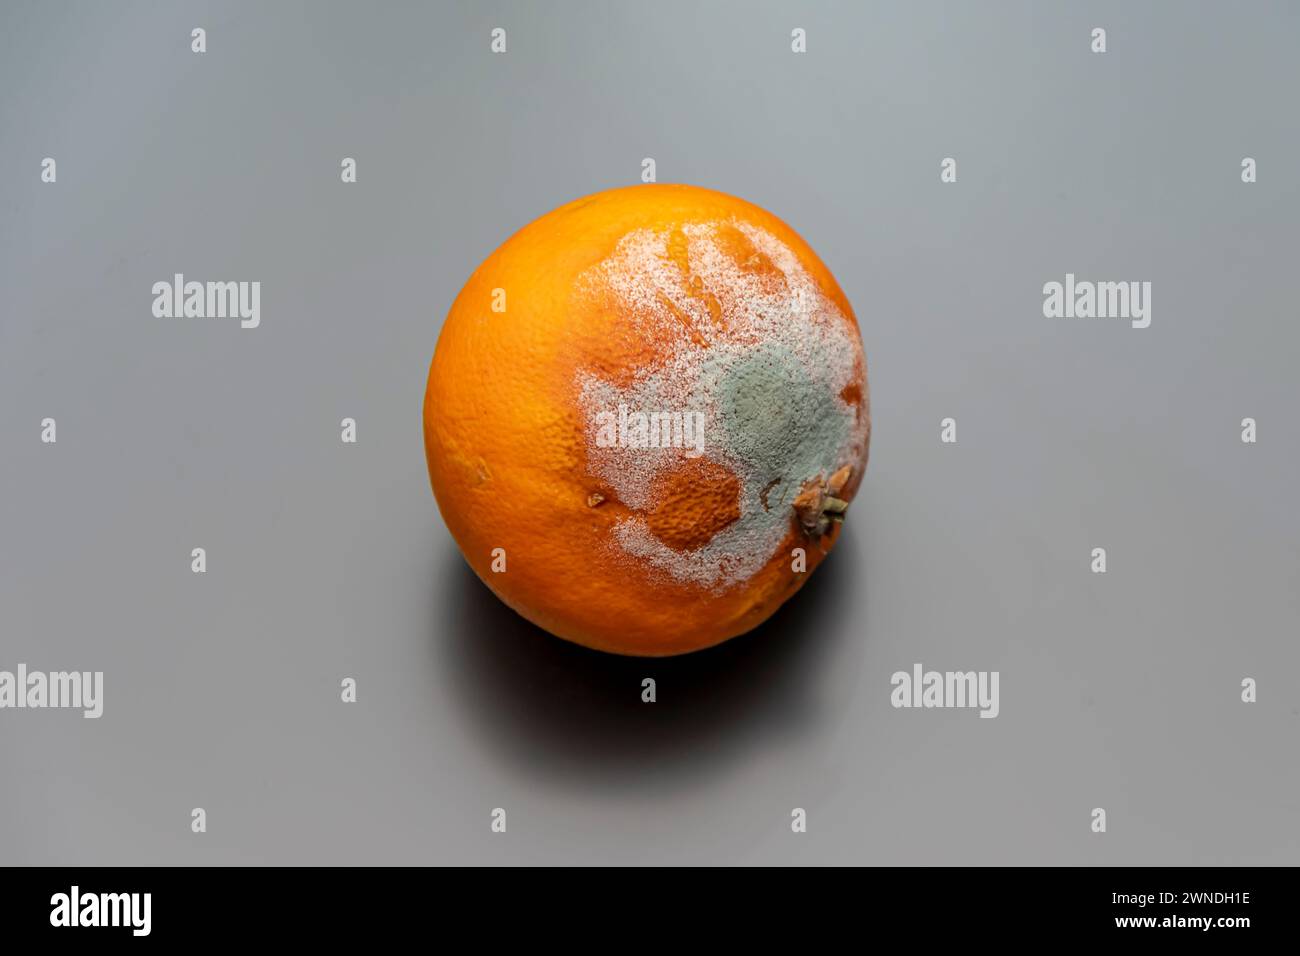 Mold on orange tangerine, white background, close-up. Stock Photo